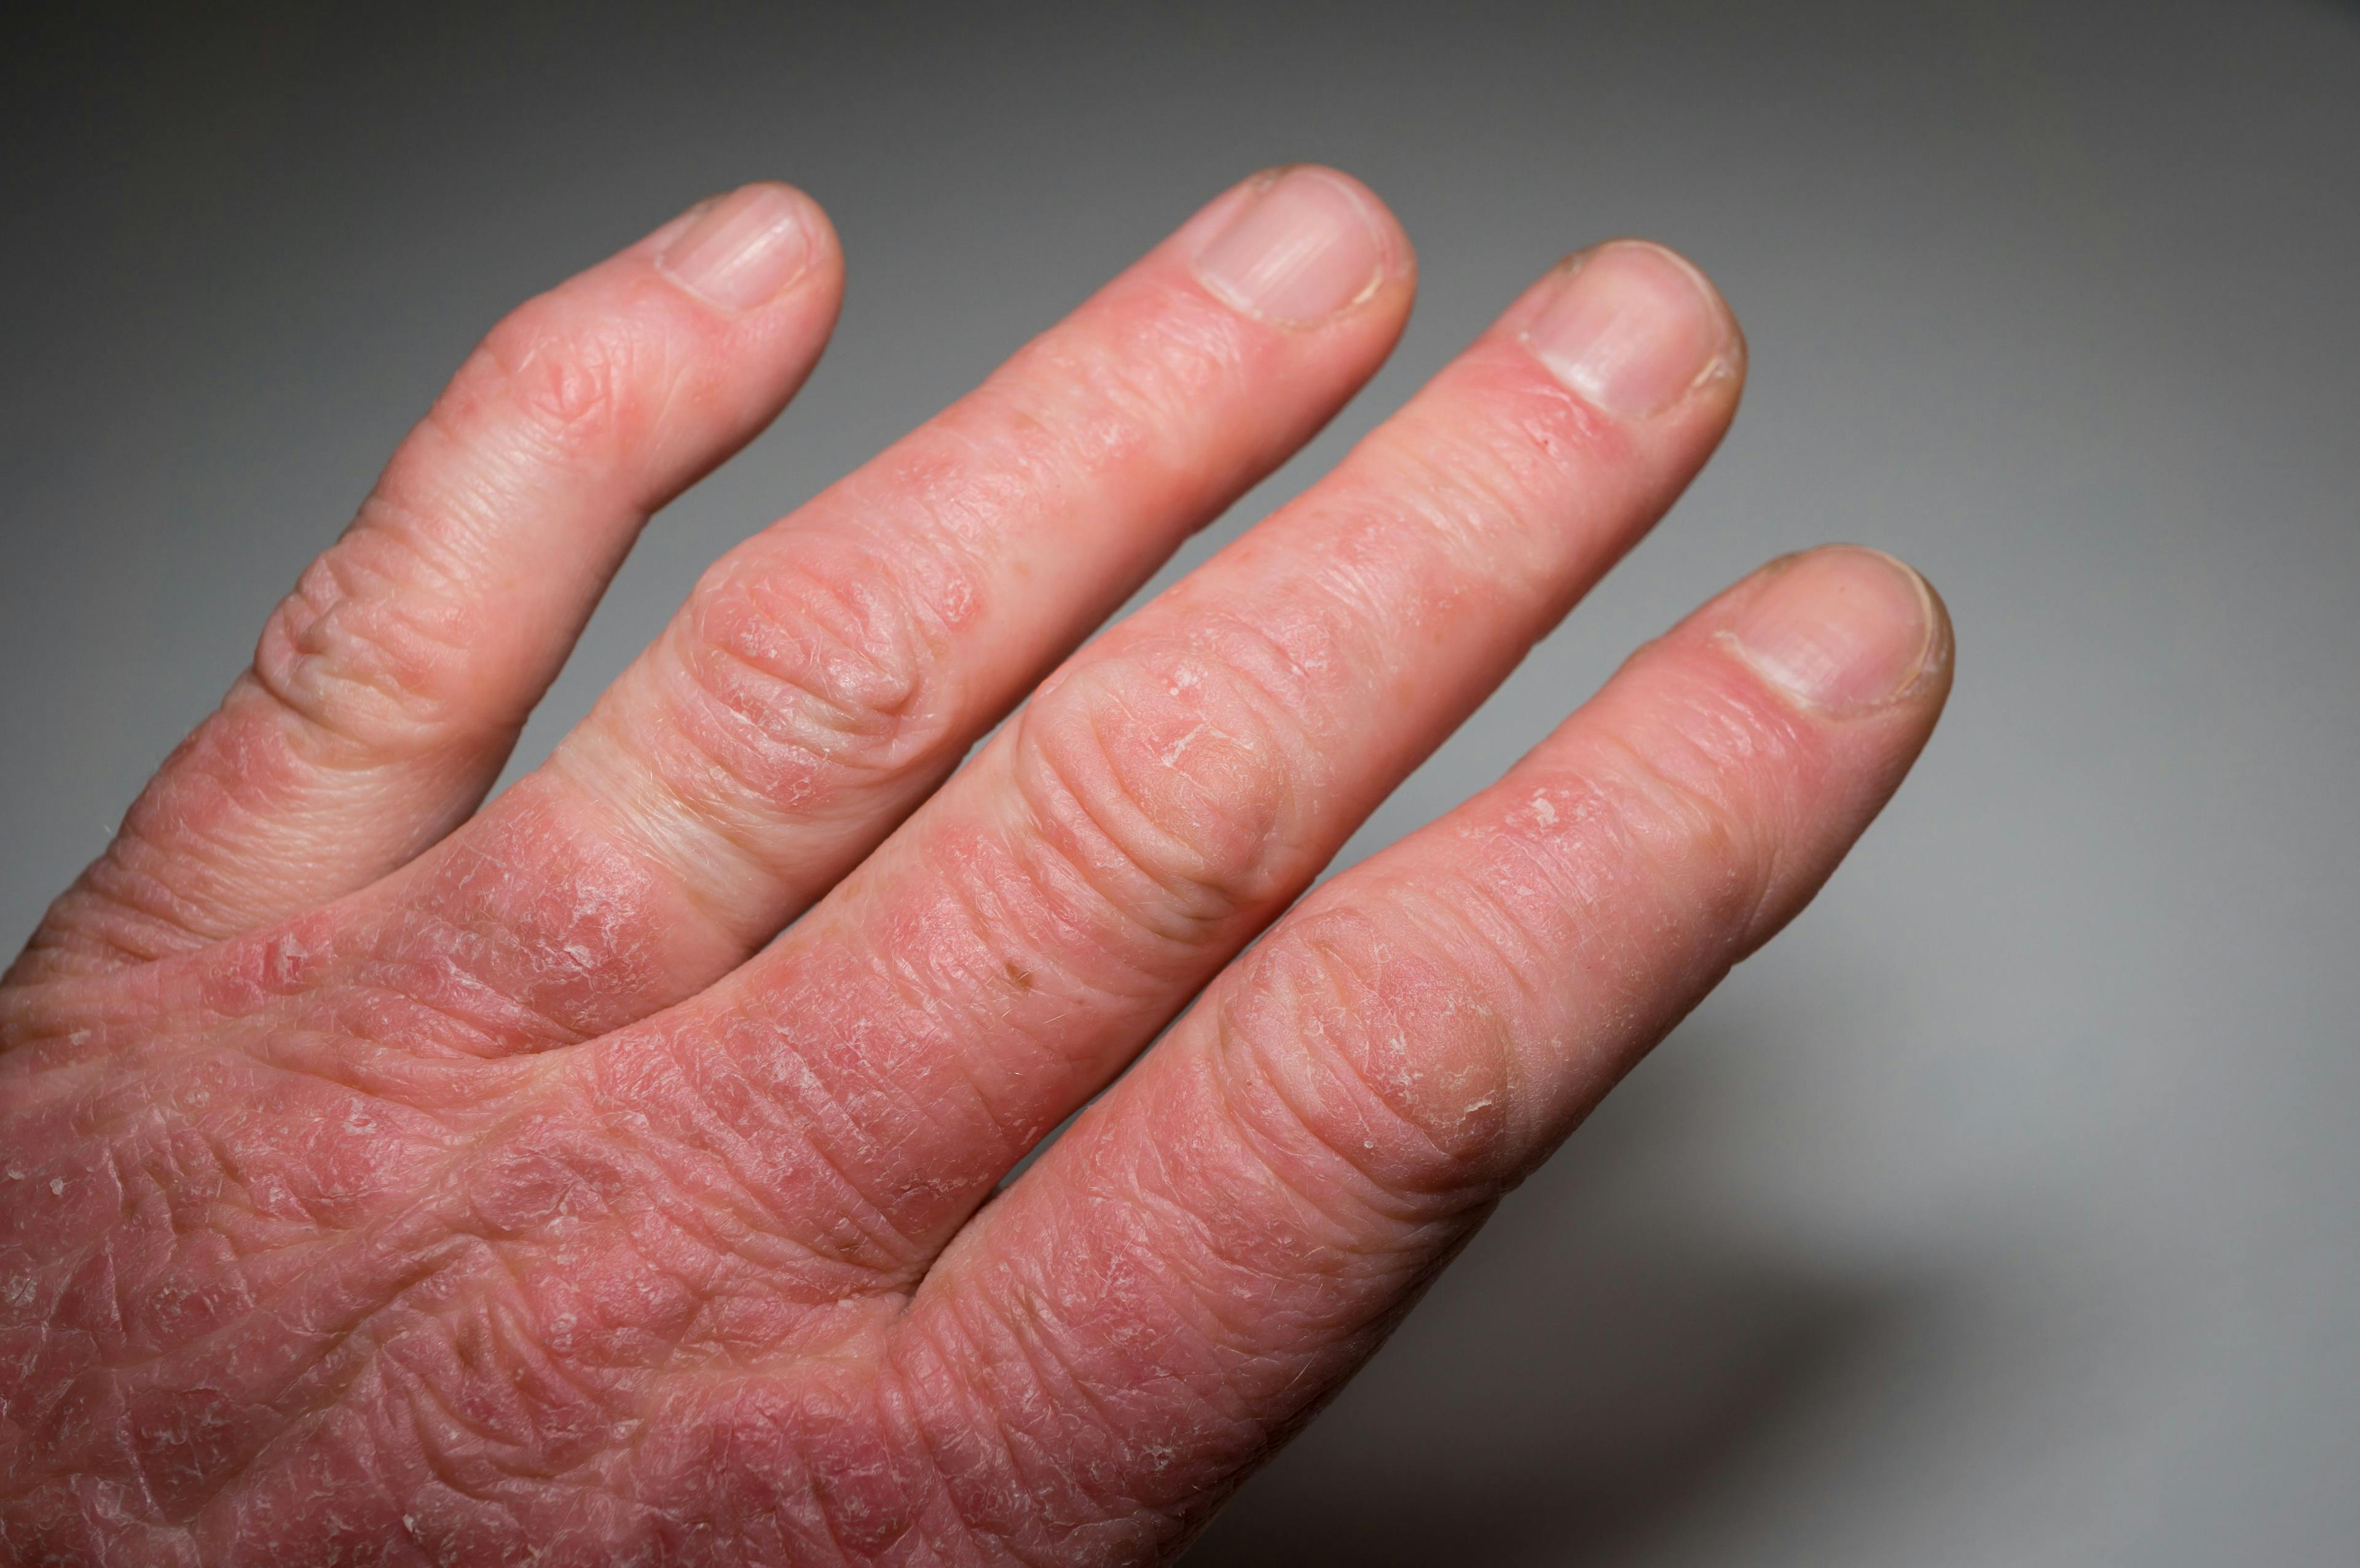 psoriatic arthritis hand